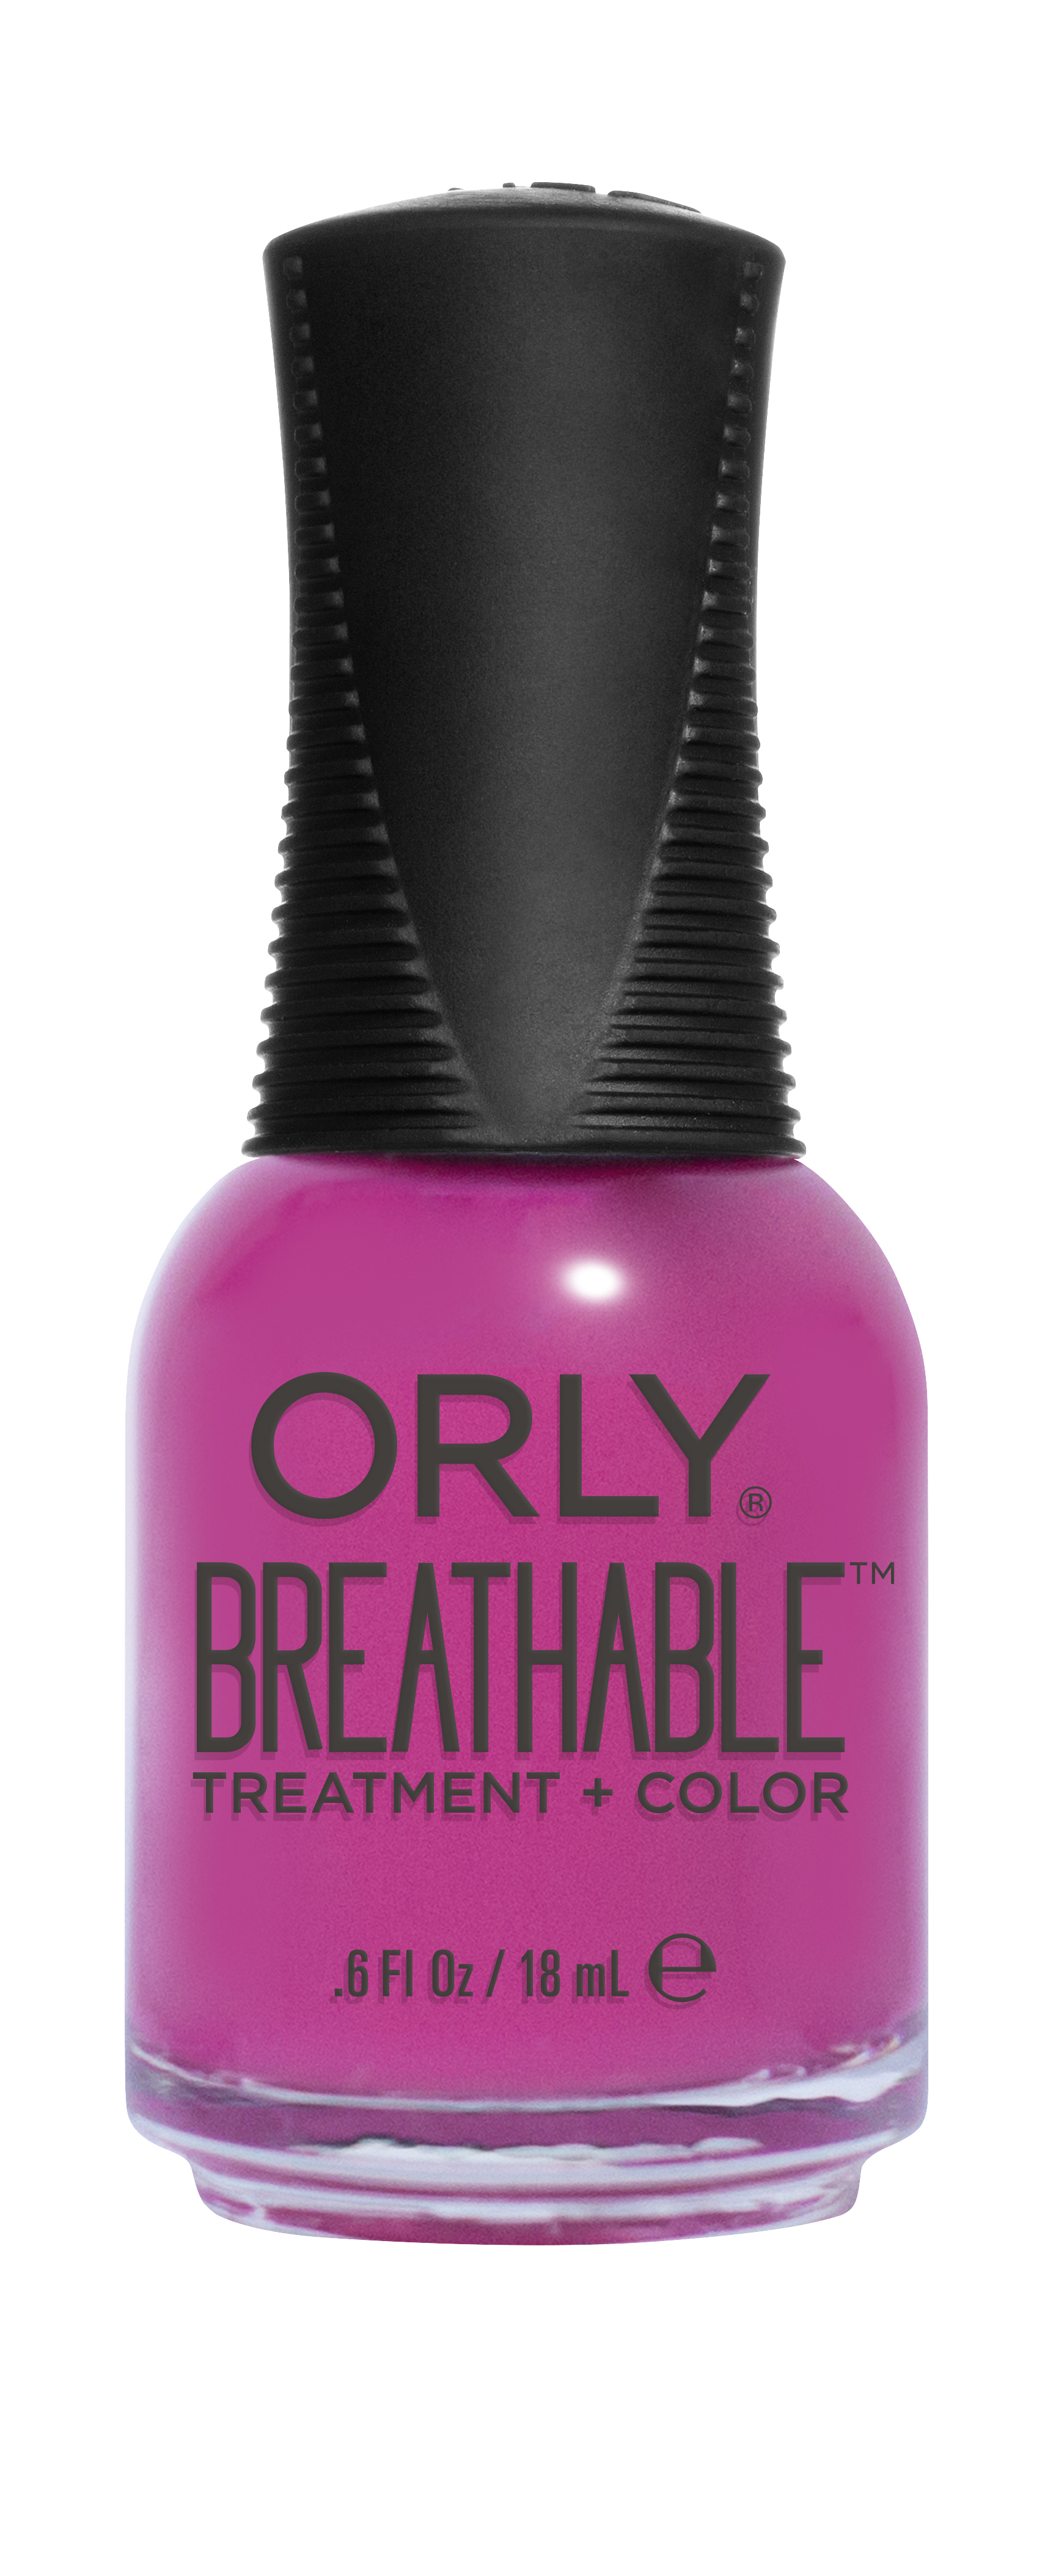 Orly Breathable: lo smalto che respira?